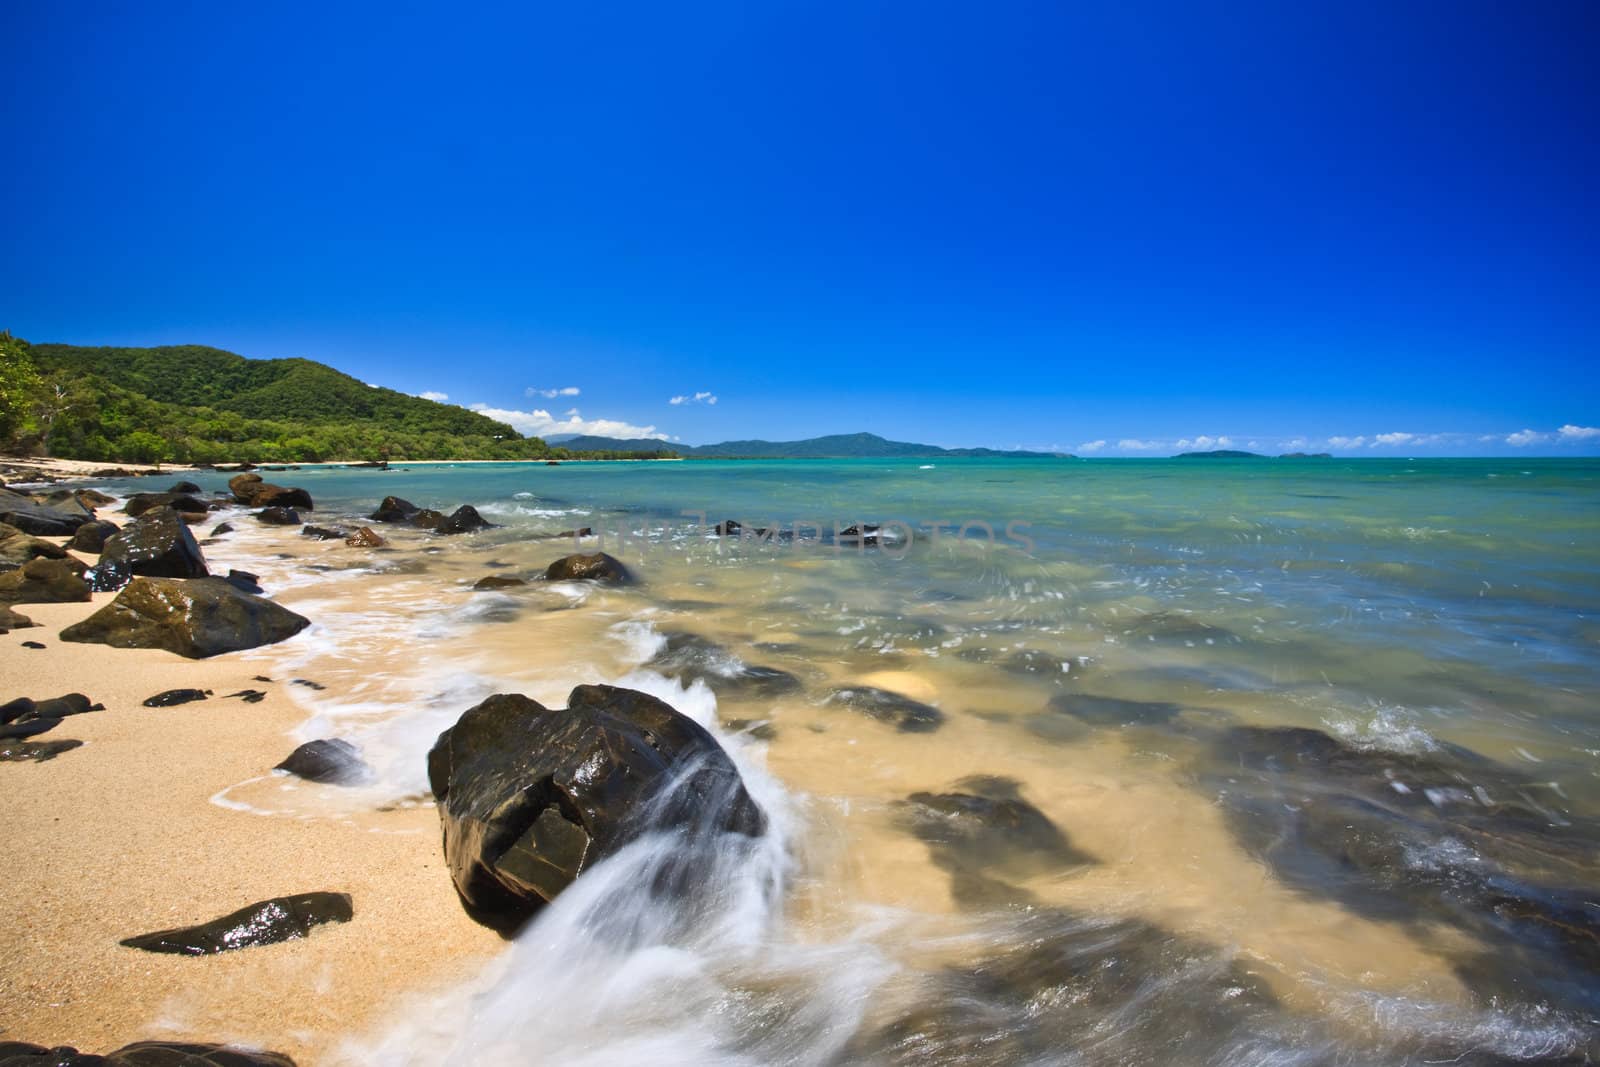 Scenic rocky seashore in a landscape image